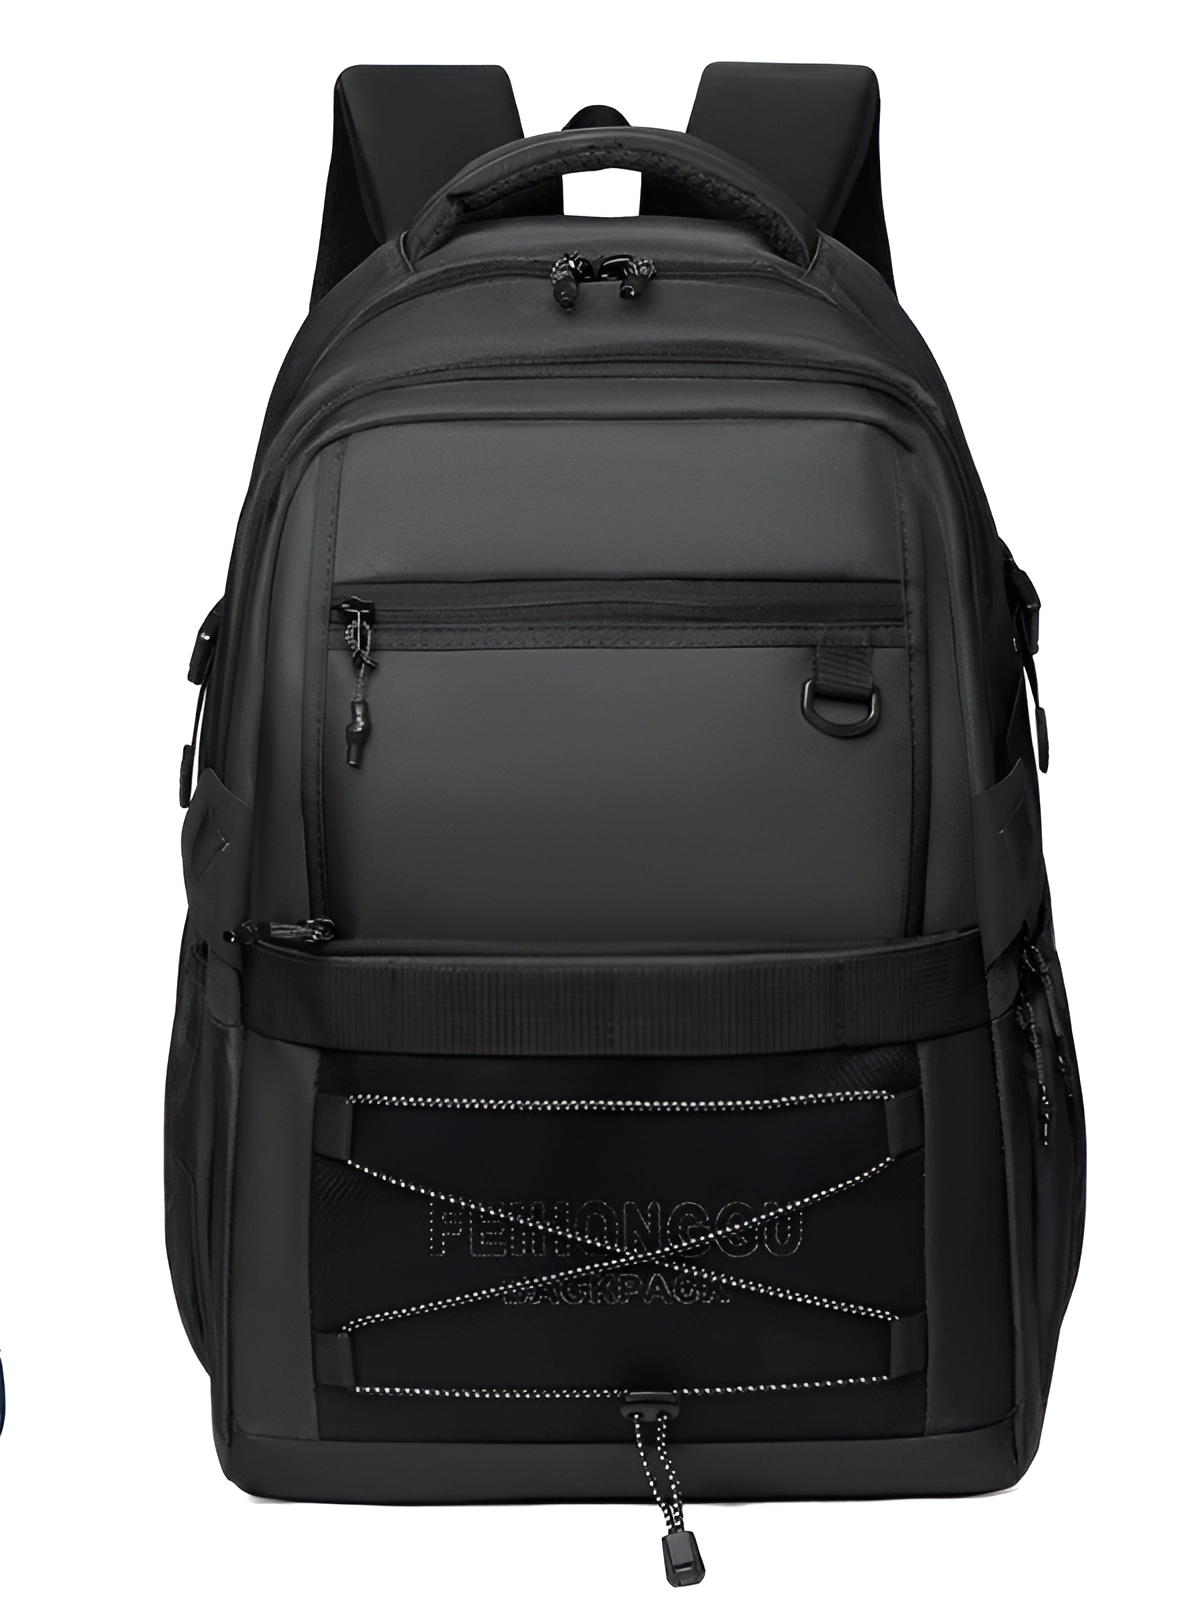 Рюкзак для города и путешествий с отделением под ноутбук или обувь, черный